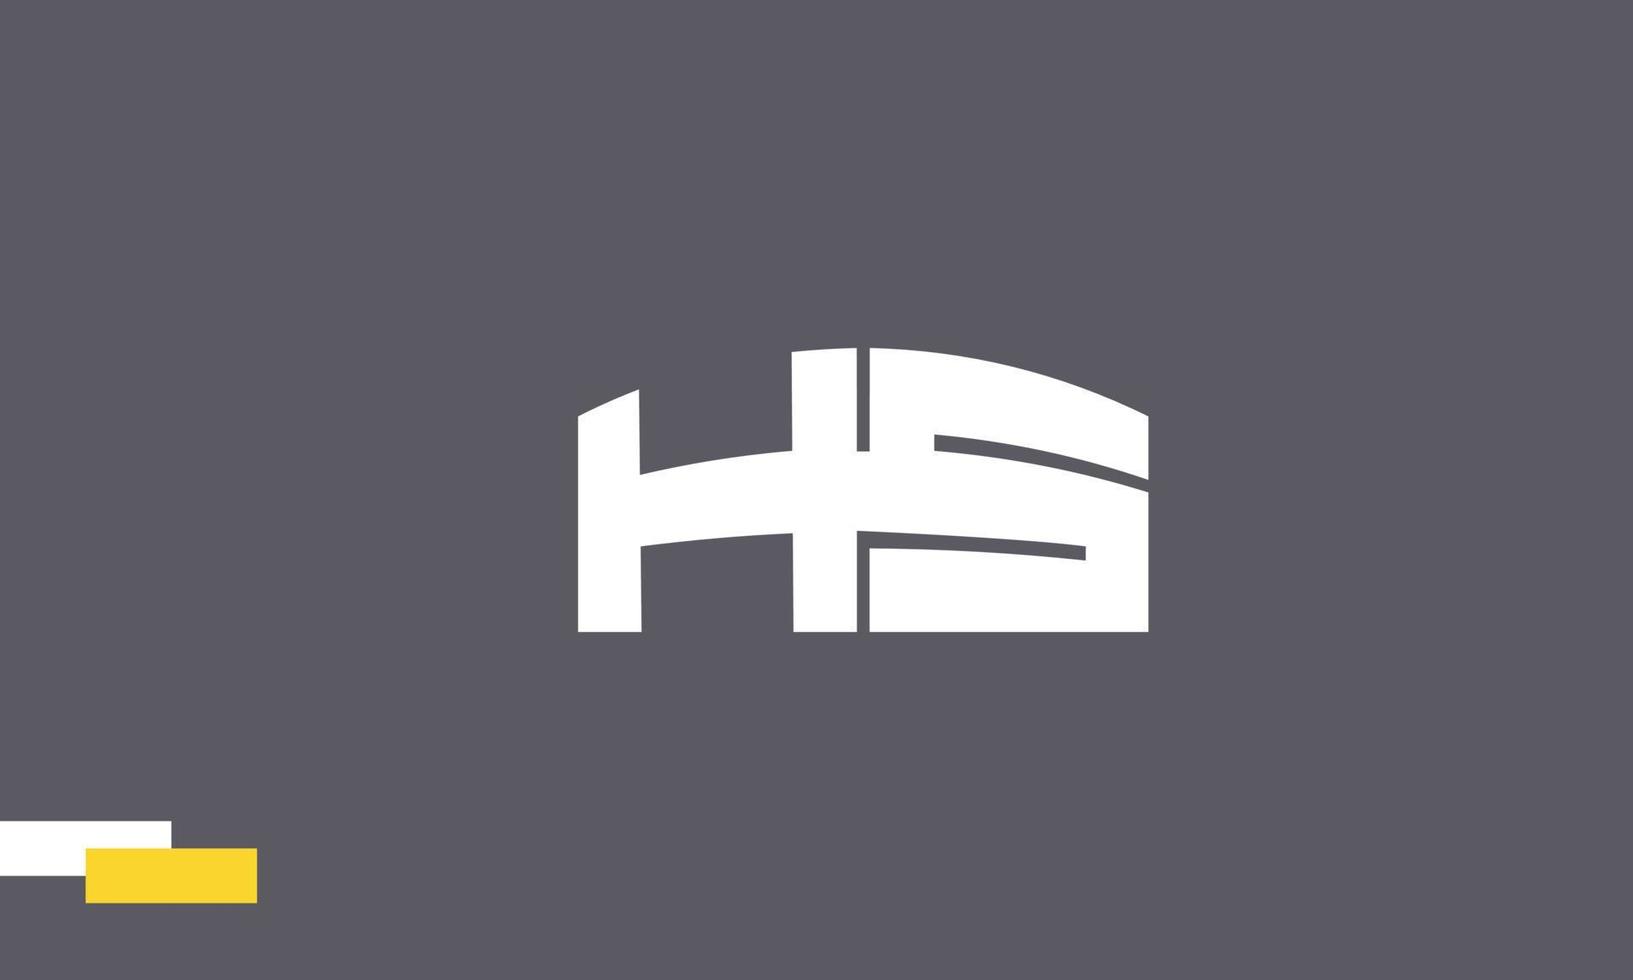 letras del alfabeto iniciales monograma logo hs, sh, h y s vector